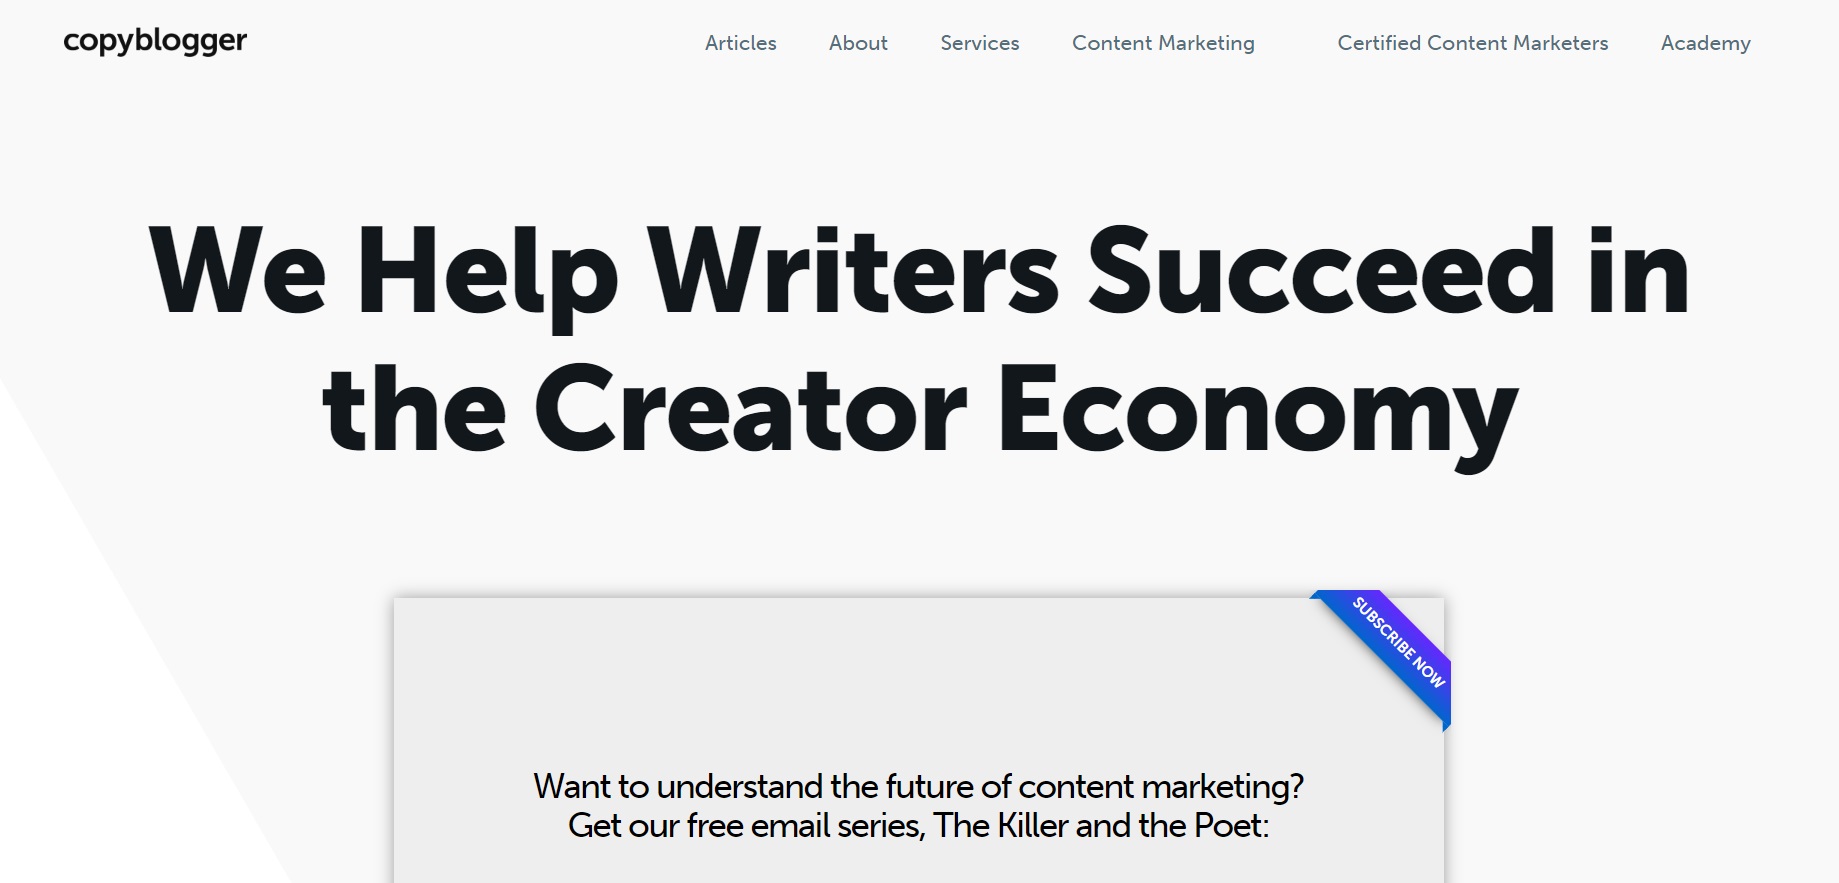 copyblogger blogi o content marketingu